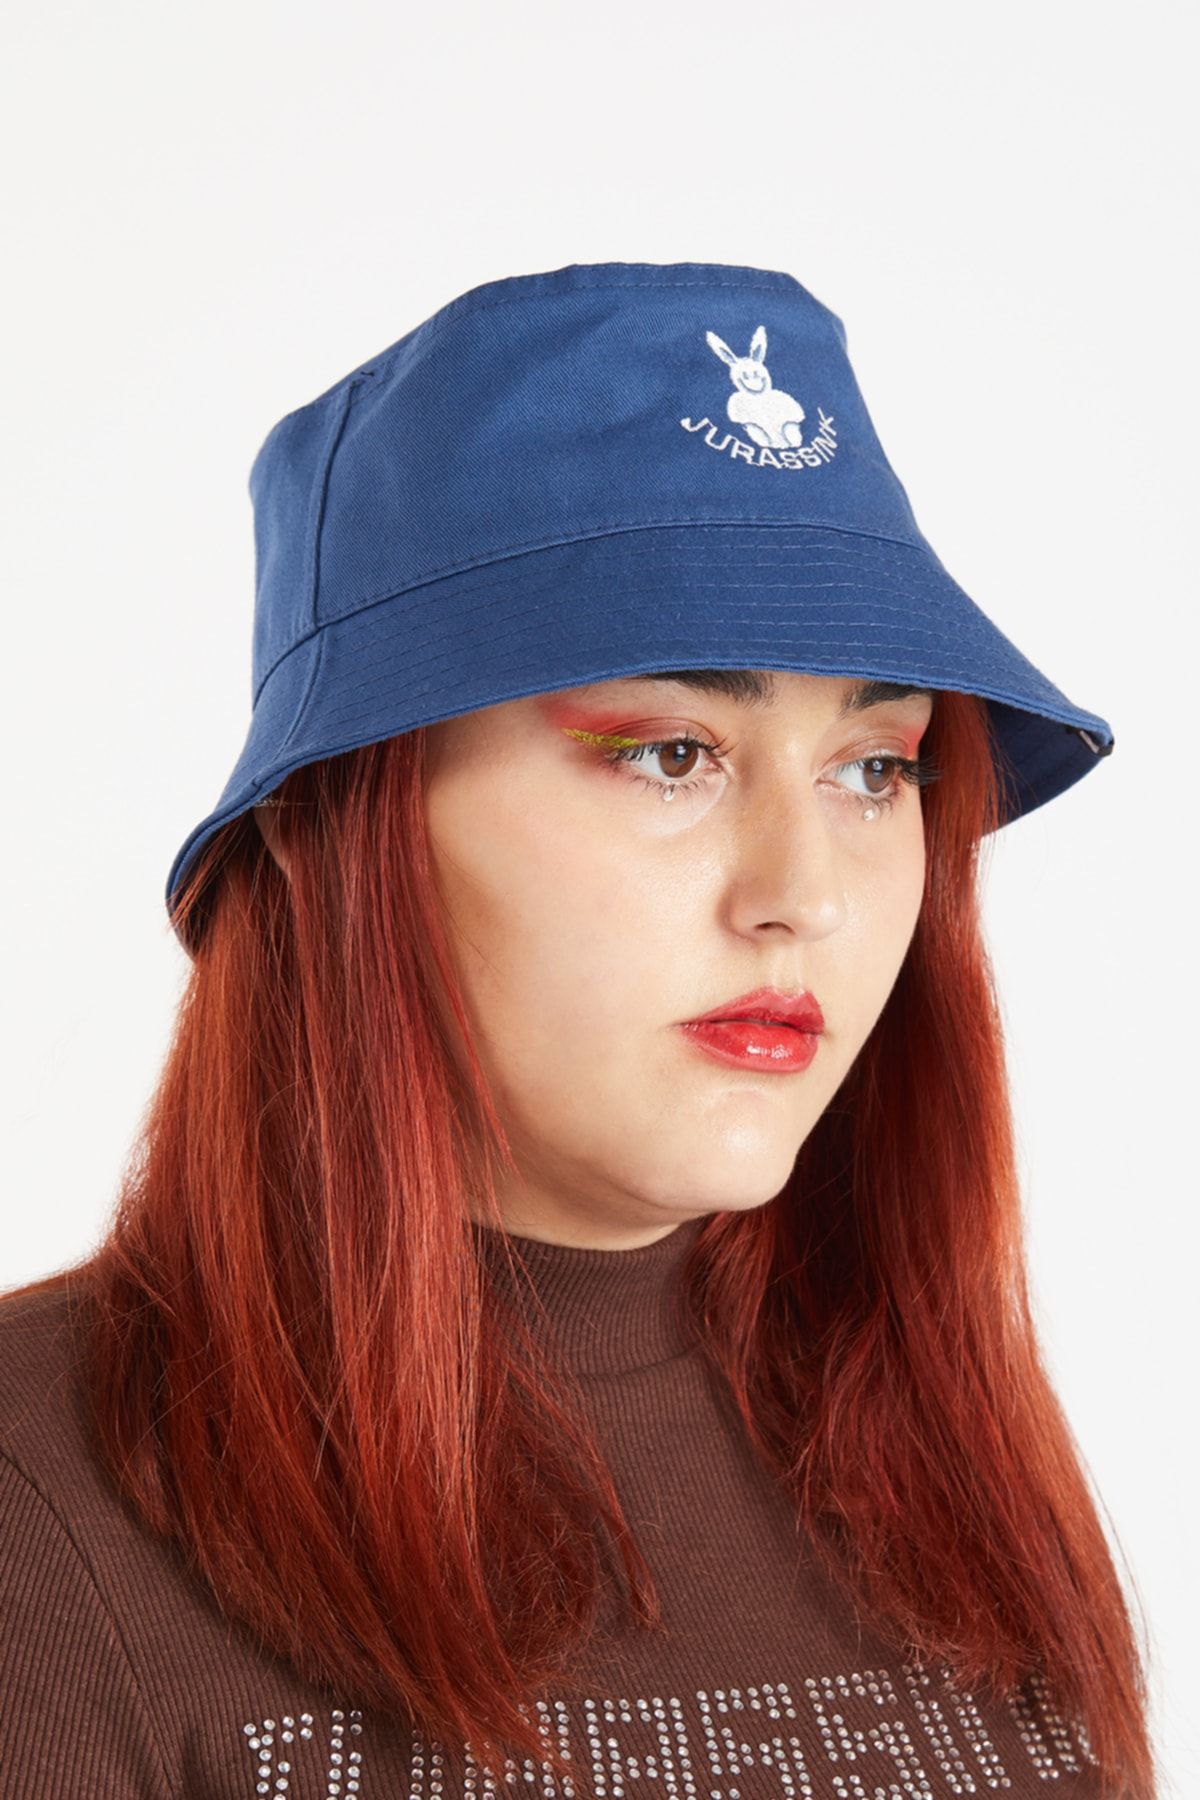 JURASSİNK Kadın Nakış Işlemeli Lacivert Bucket Şapka